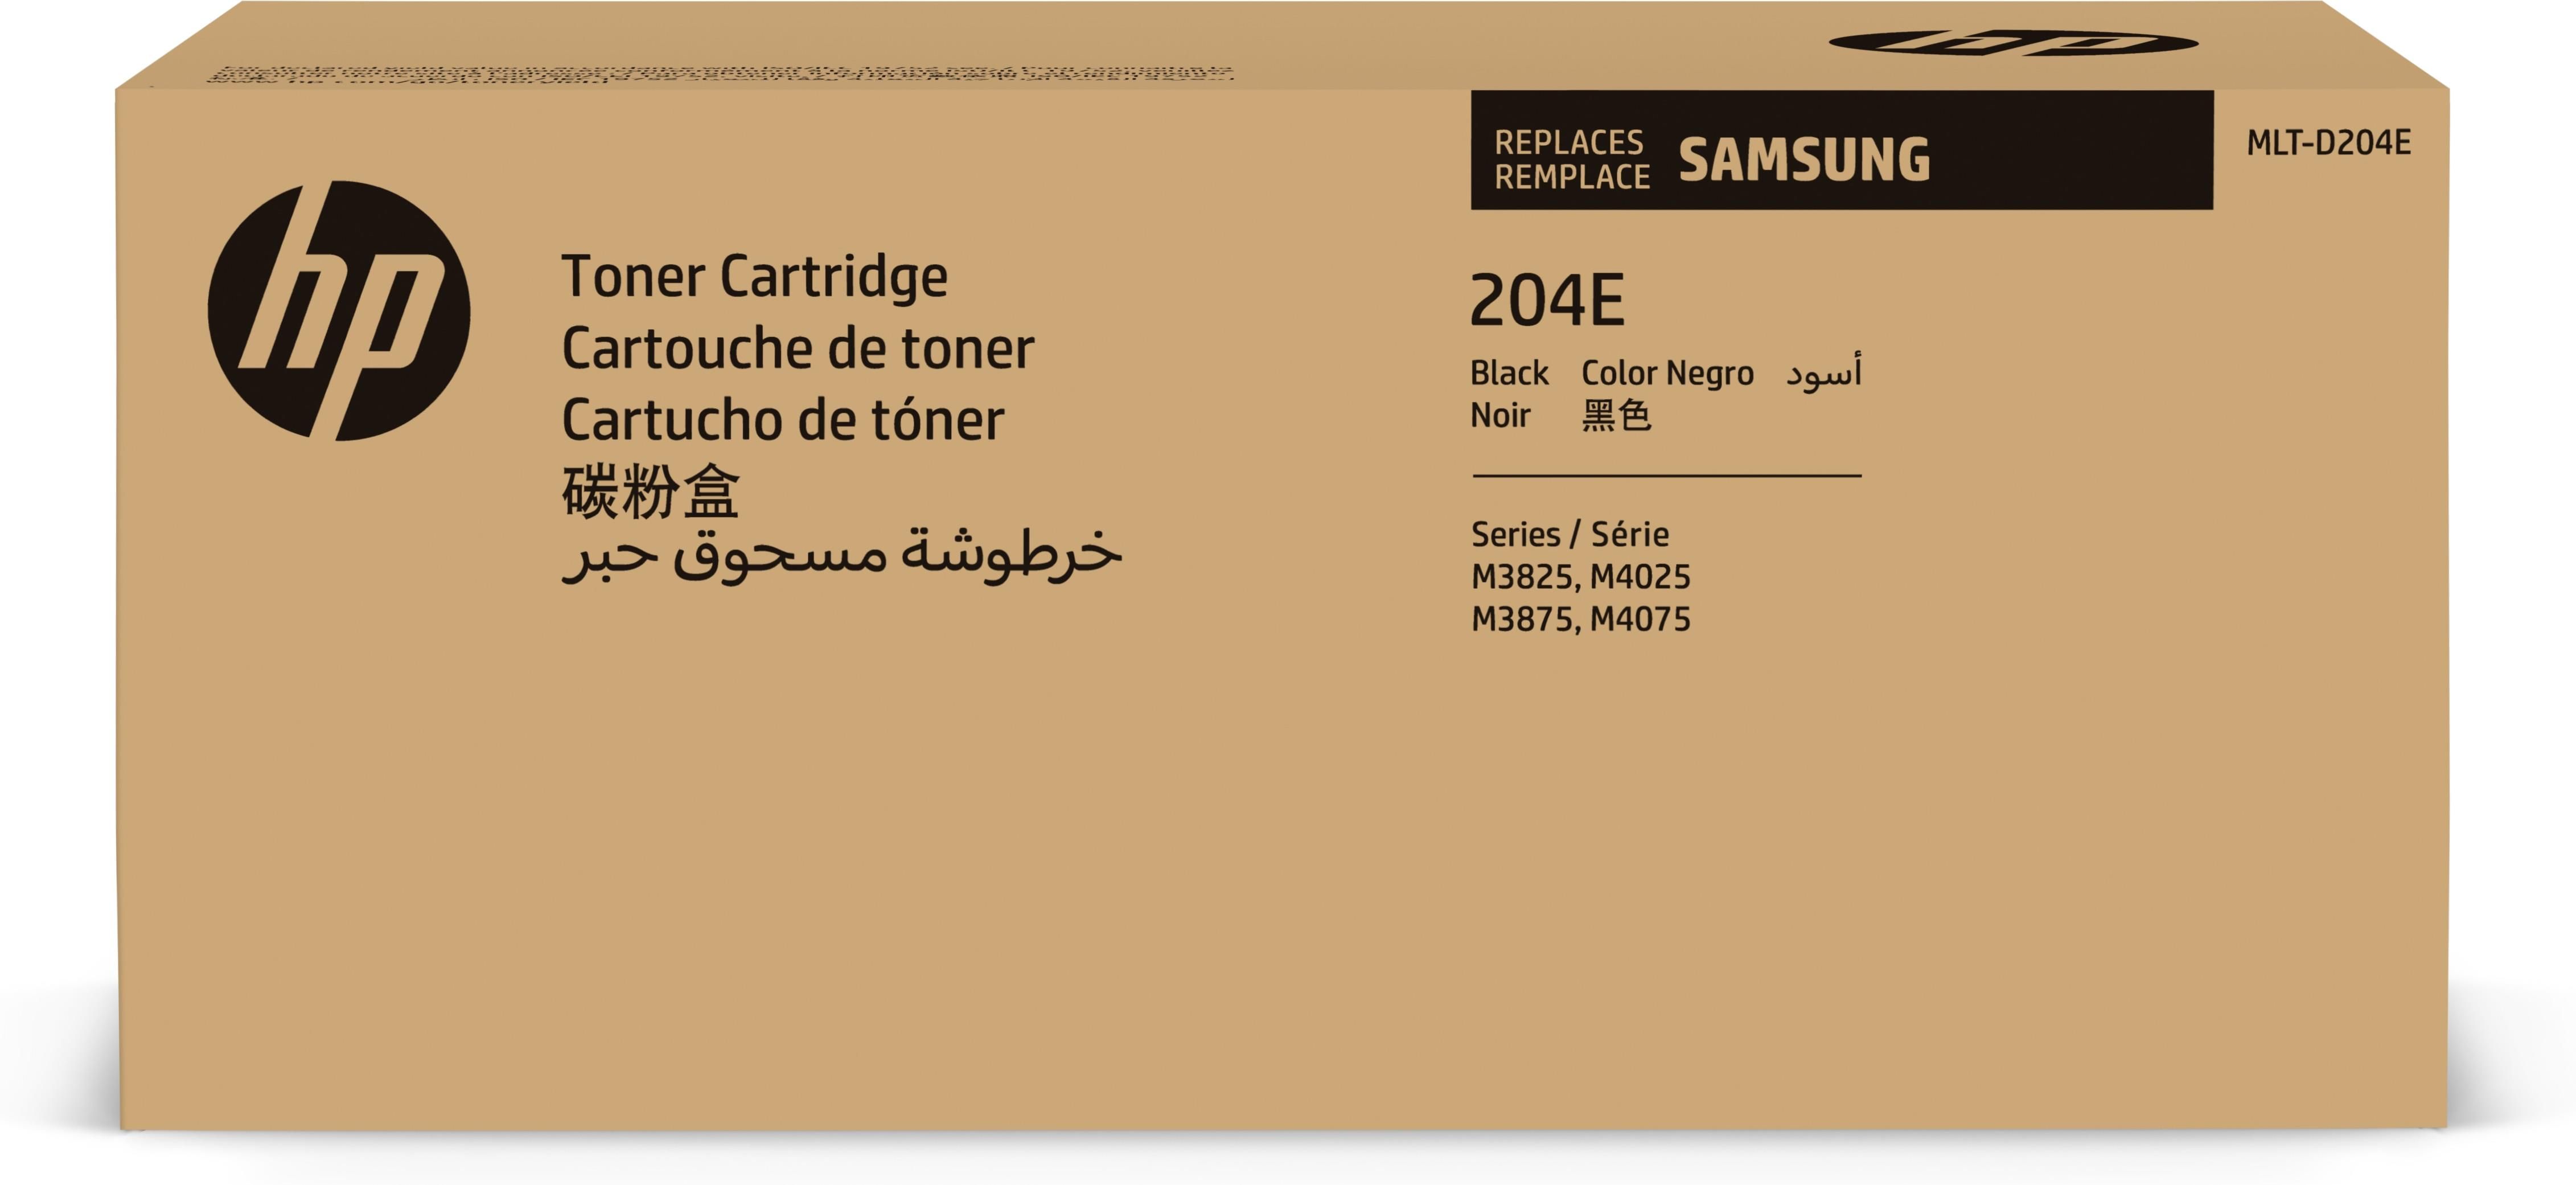 Samsung MLT-D 204 E